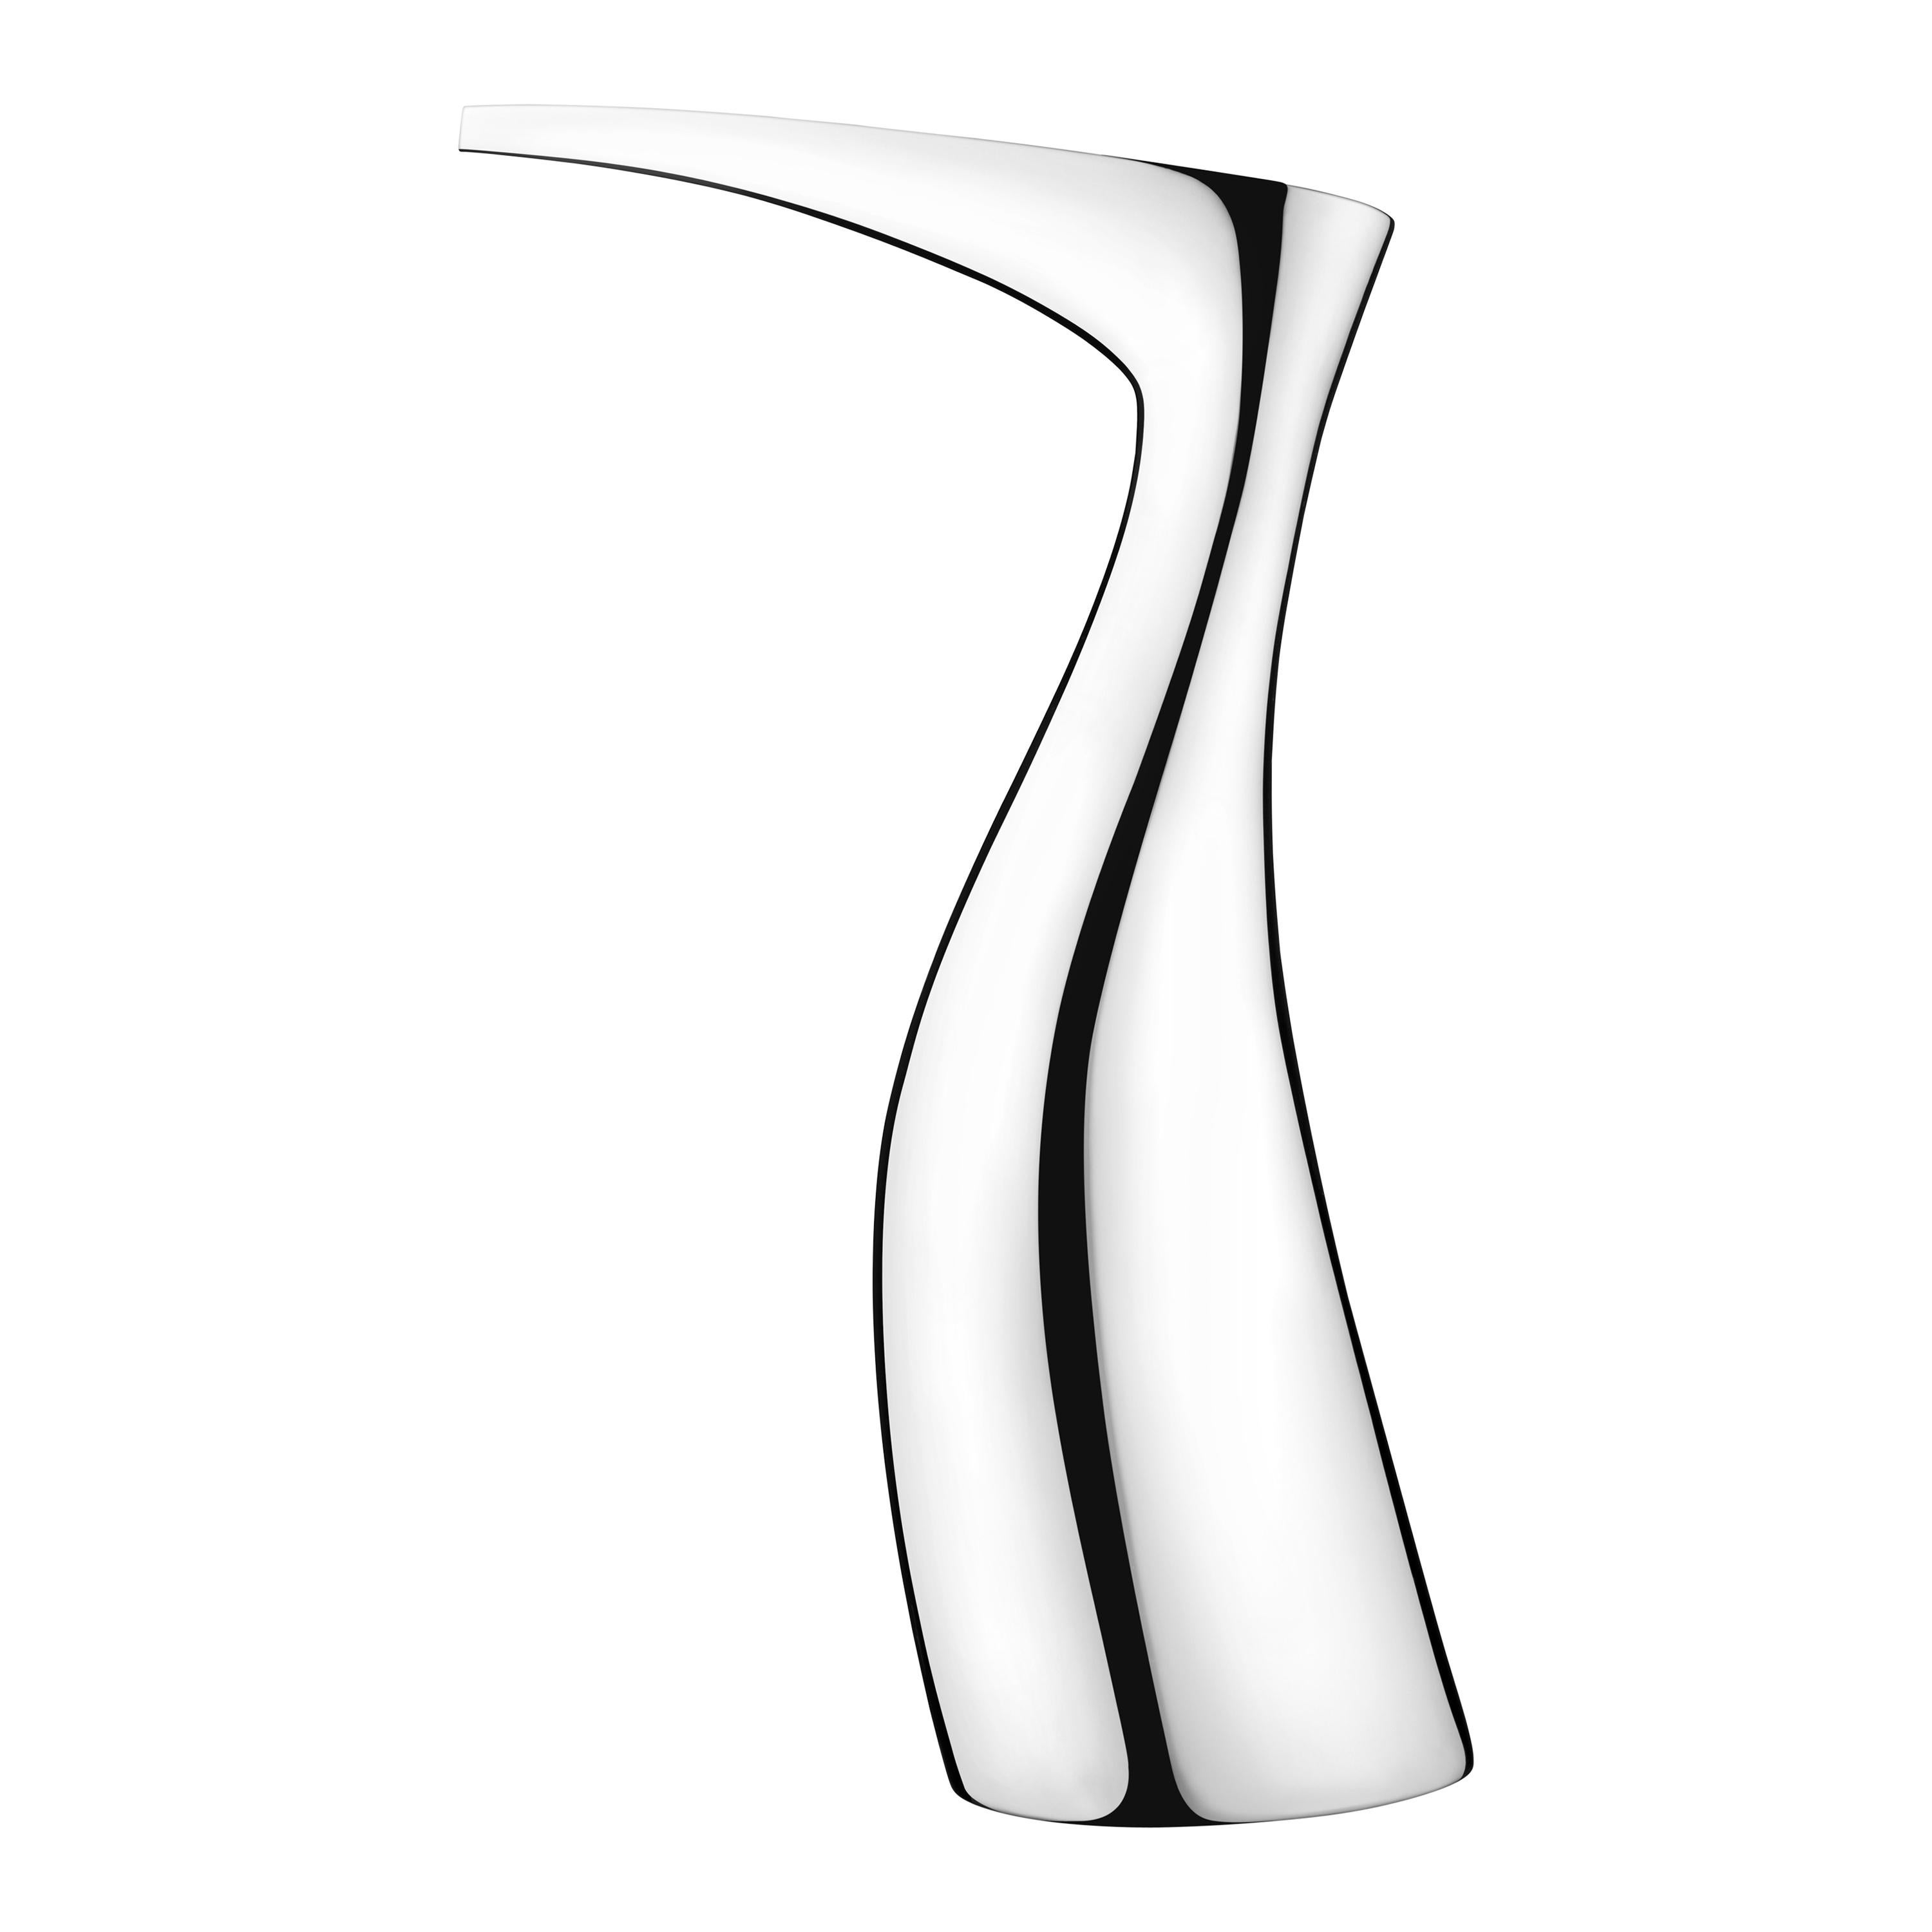 Georg Jensen Ibis Vase in Stainless Steel Mirror Finish by Allan Scharff For Sale